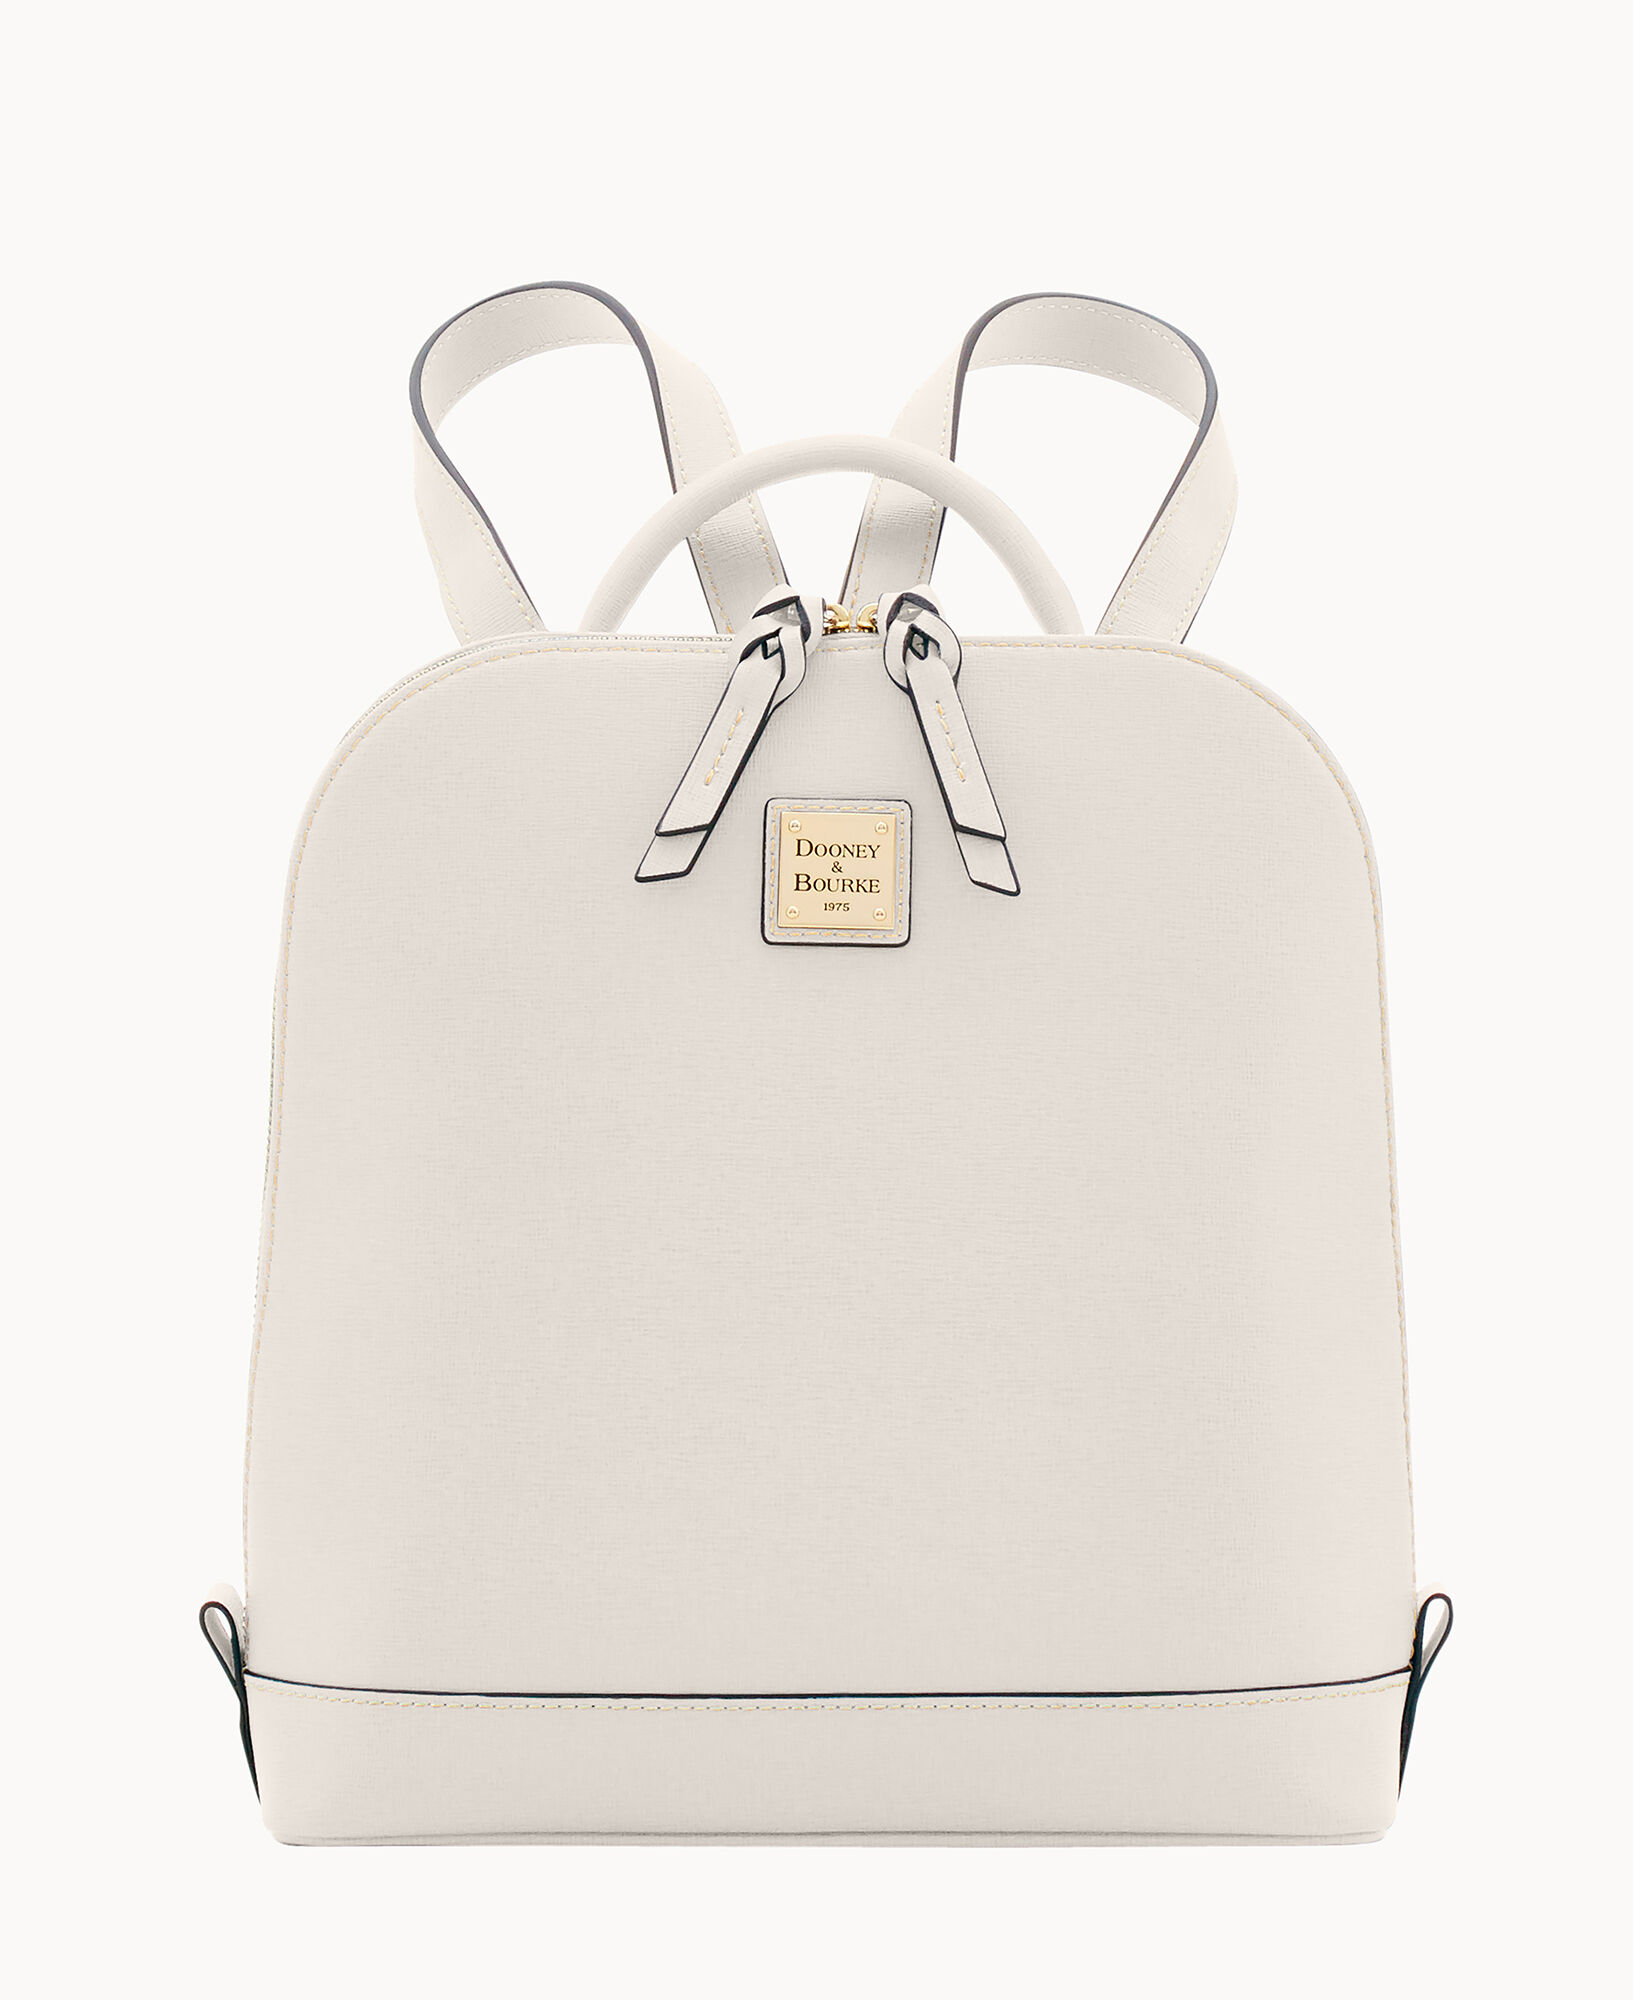 Dooney & Bourke Saffiano Small Zip Pod Backpack